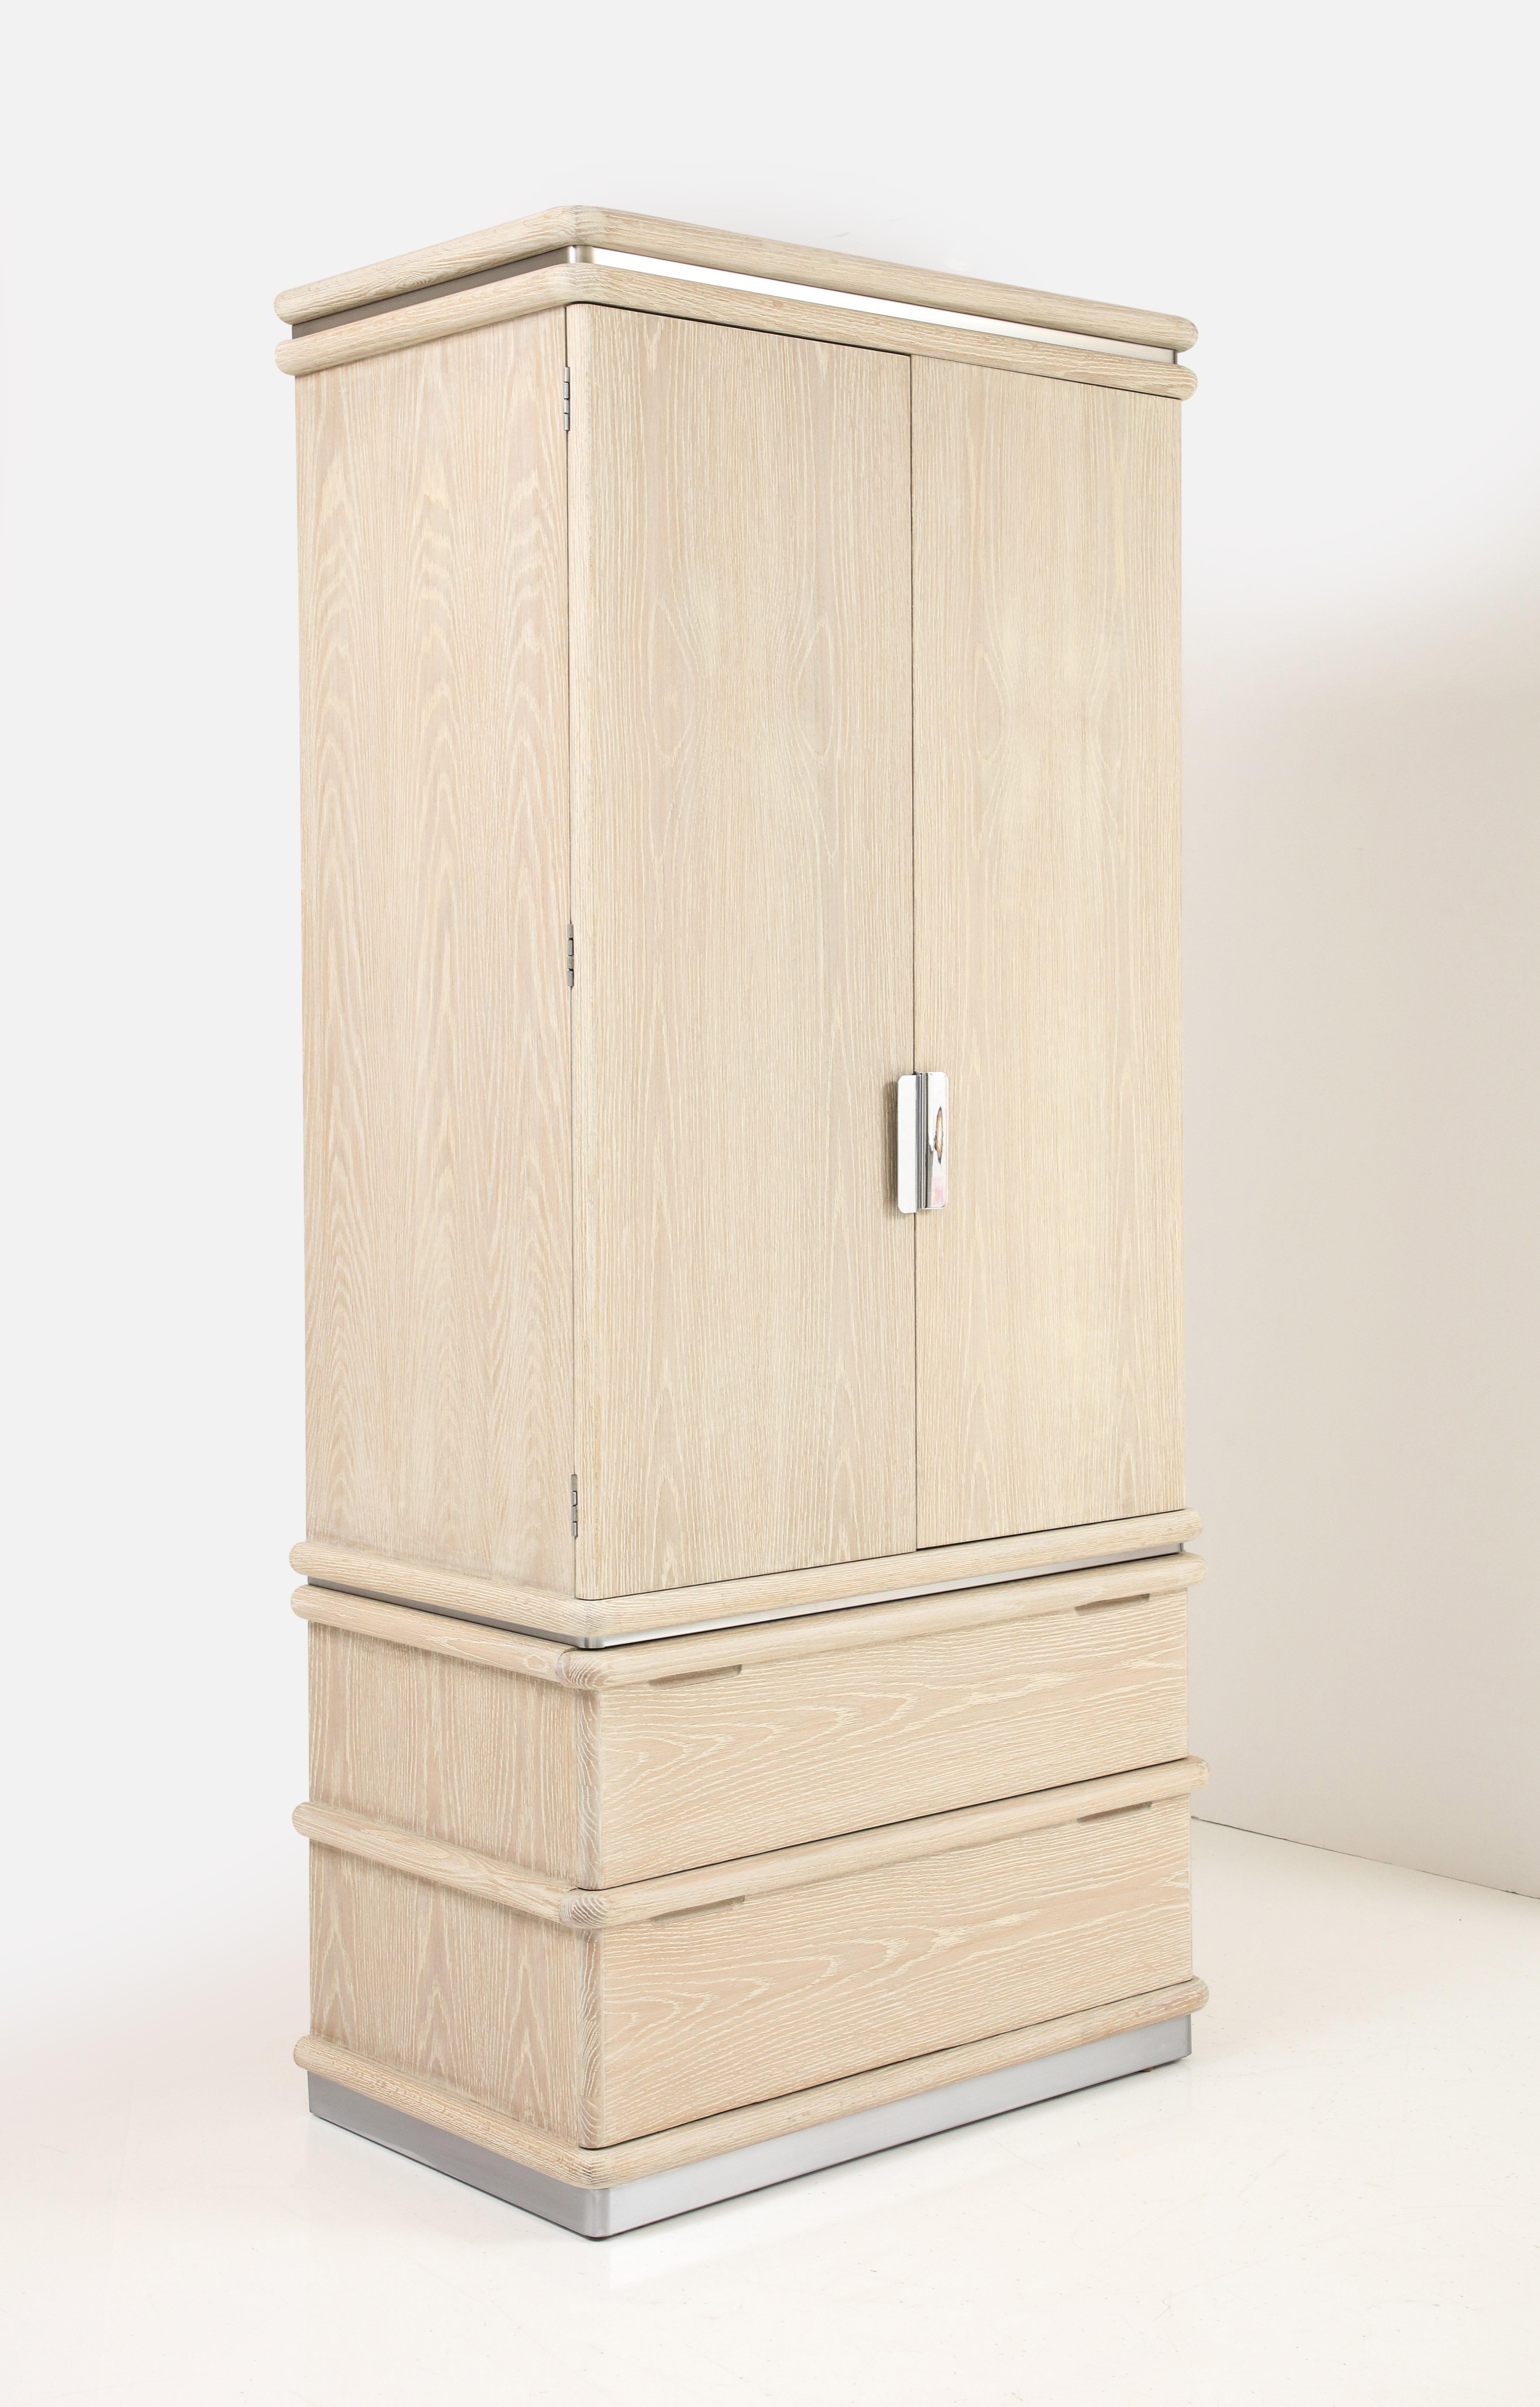 Armoire en chêne cérusé finie sur mesure par Jay Spectre pour Century Furniture. L'armoire comporte deux grands tiroirs inférieurs et les portes s'ouvrent pour révéler une série de compartiments et de tiroirs plus petits. Récemment restauré à l'état